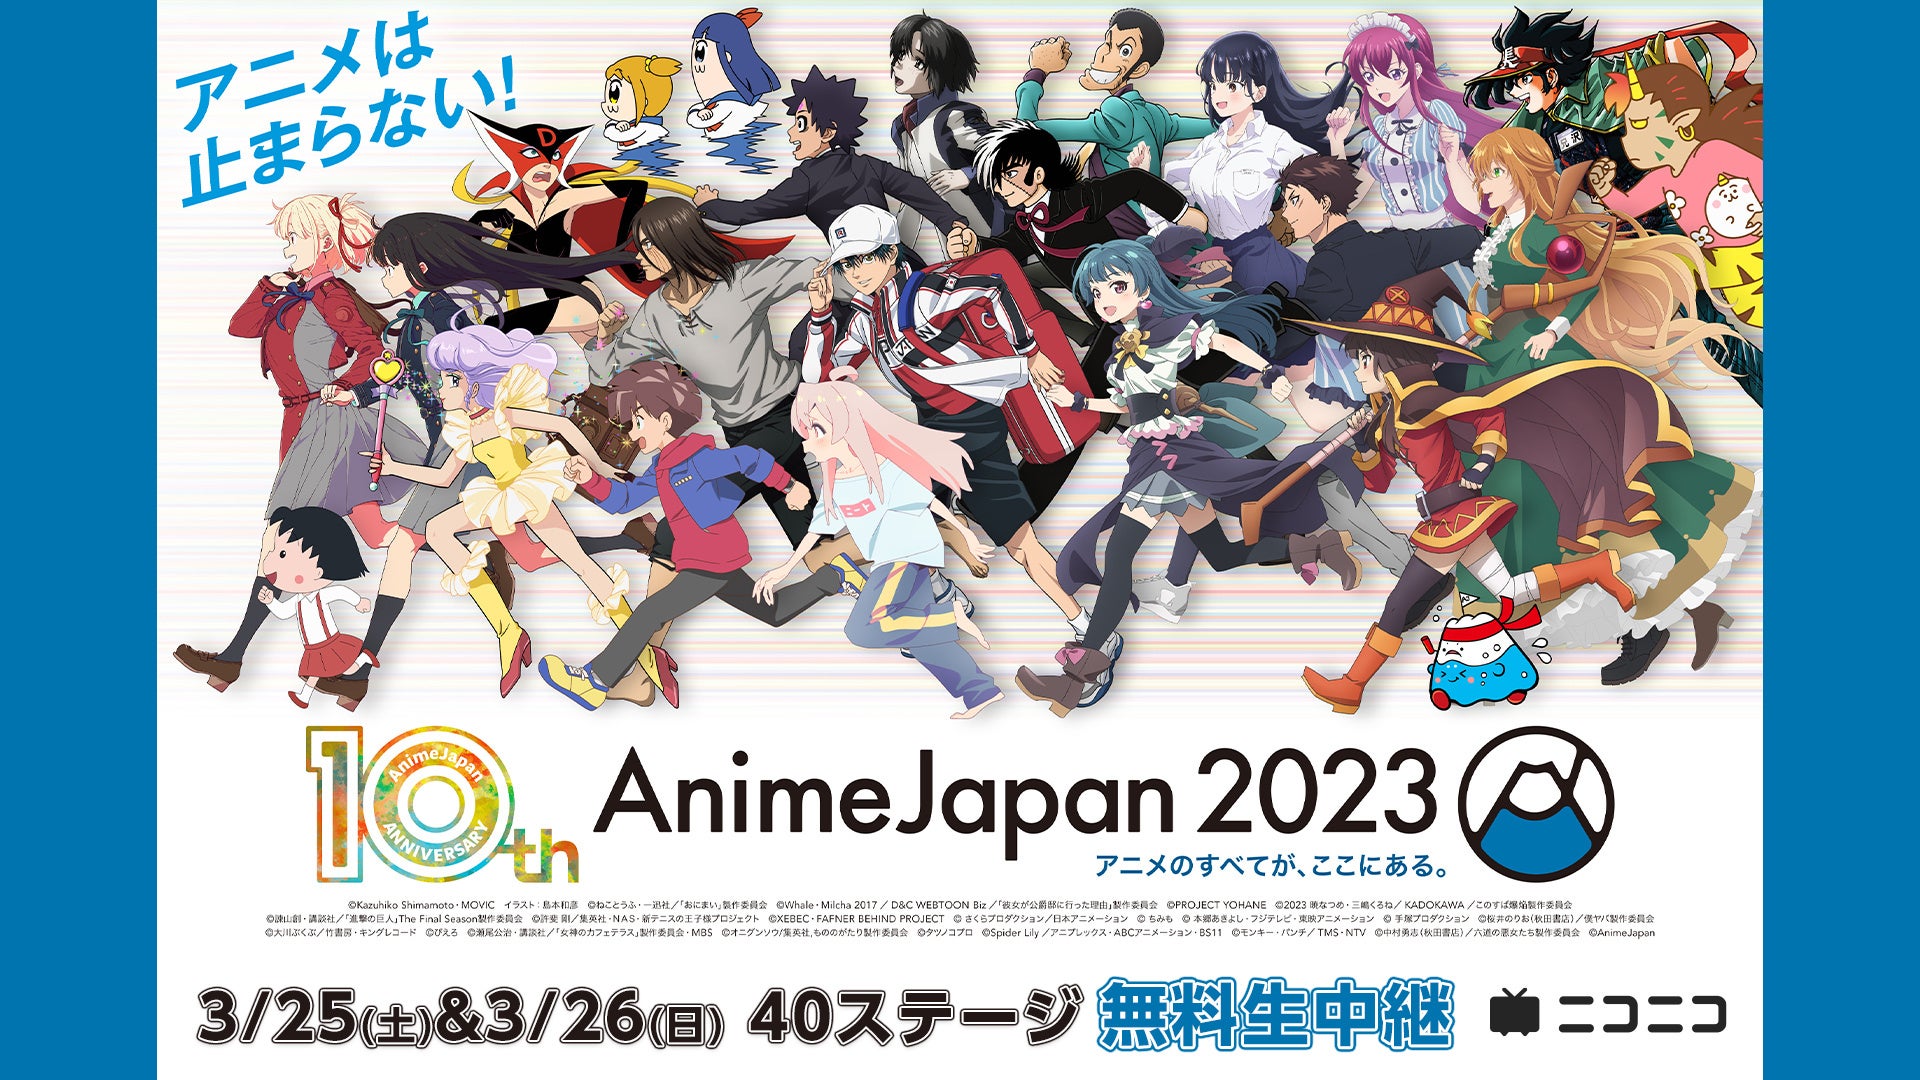 世界最大級のアニメイベント「AnimeJapan 2023」 3/25-26、AJステージをニコ生で無料生中継 豪華出演者による最新情報の発表やトークなど、計40プログラムをお届け